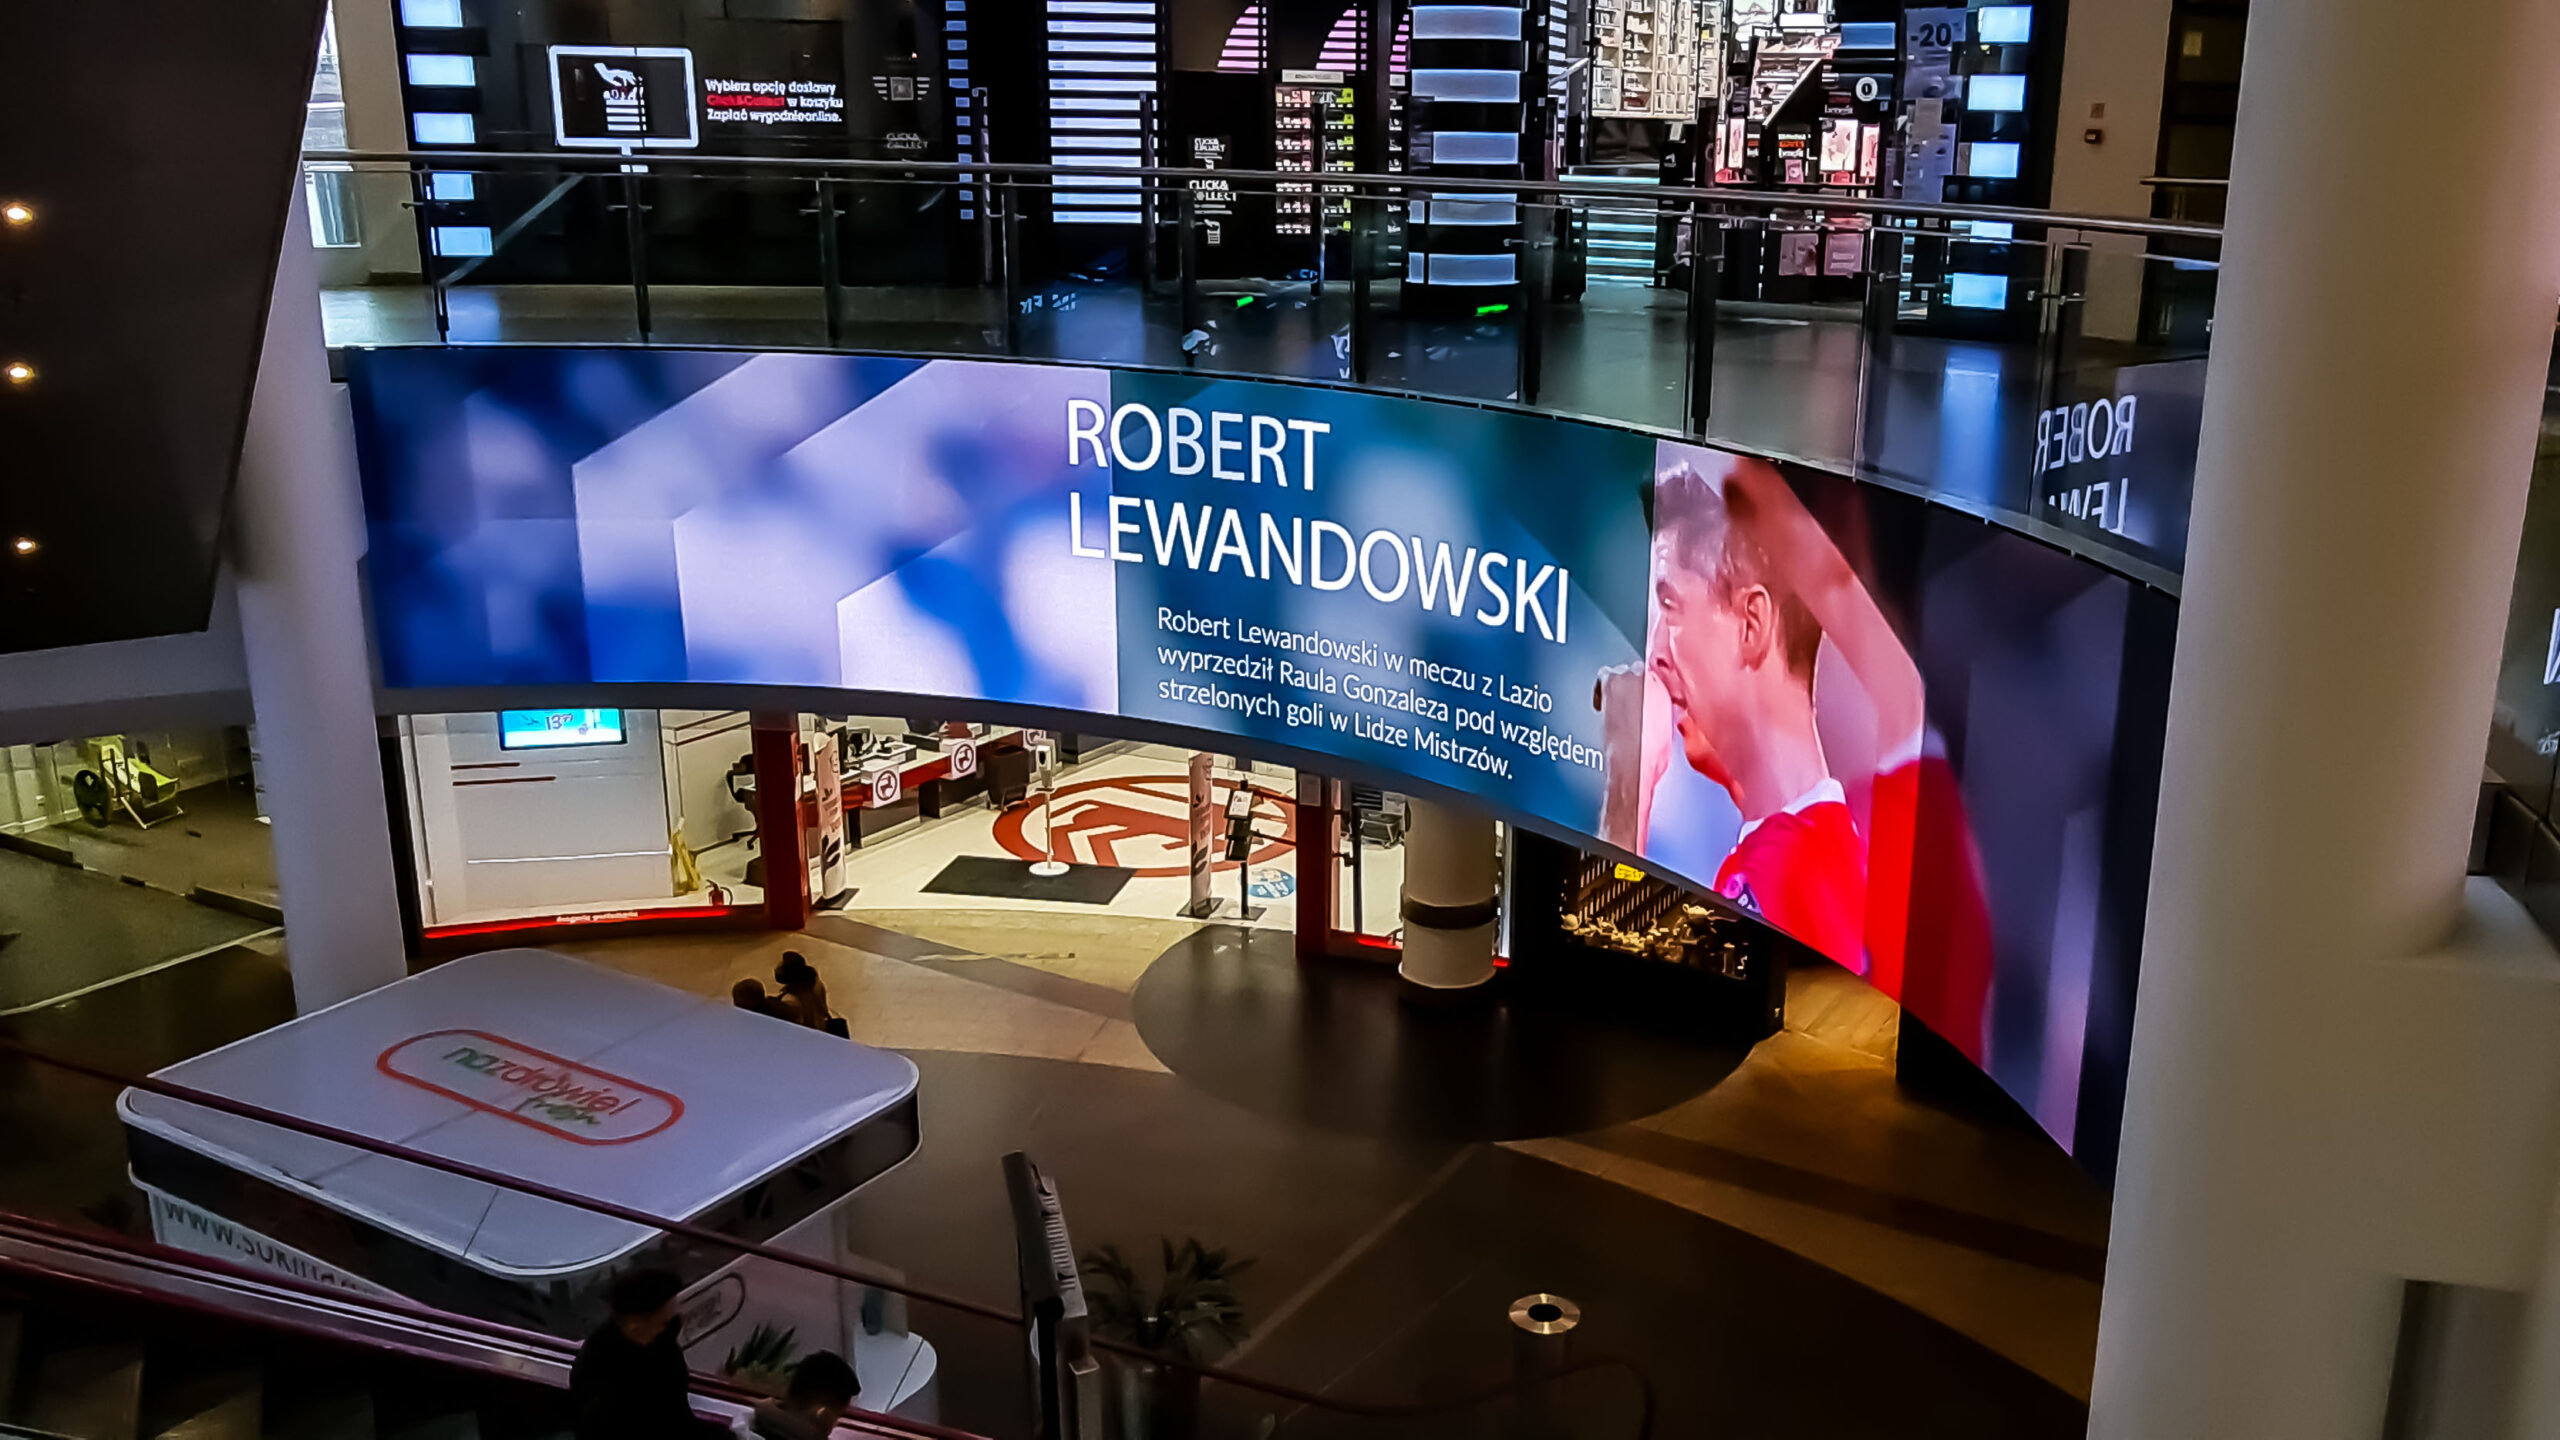 Wygięty ekran LED we wnętrzu galerii Złote Tarasy w Warszawie